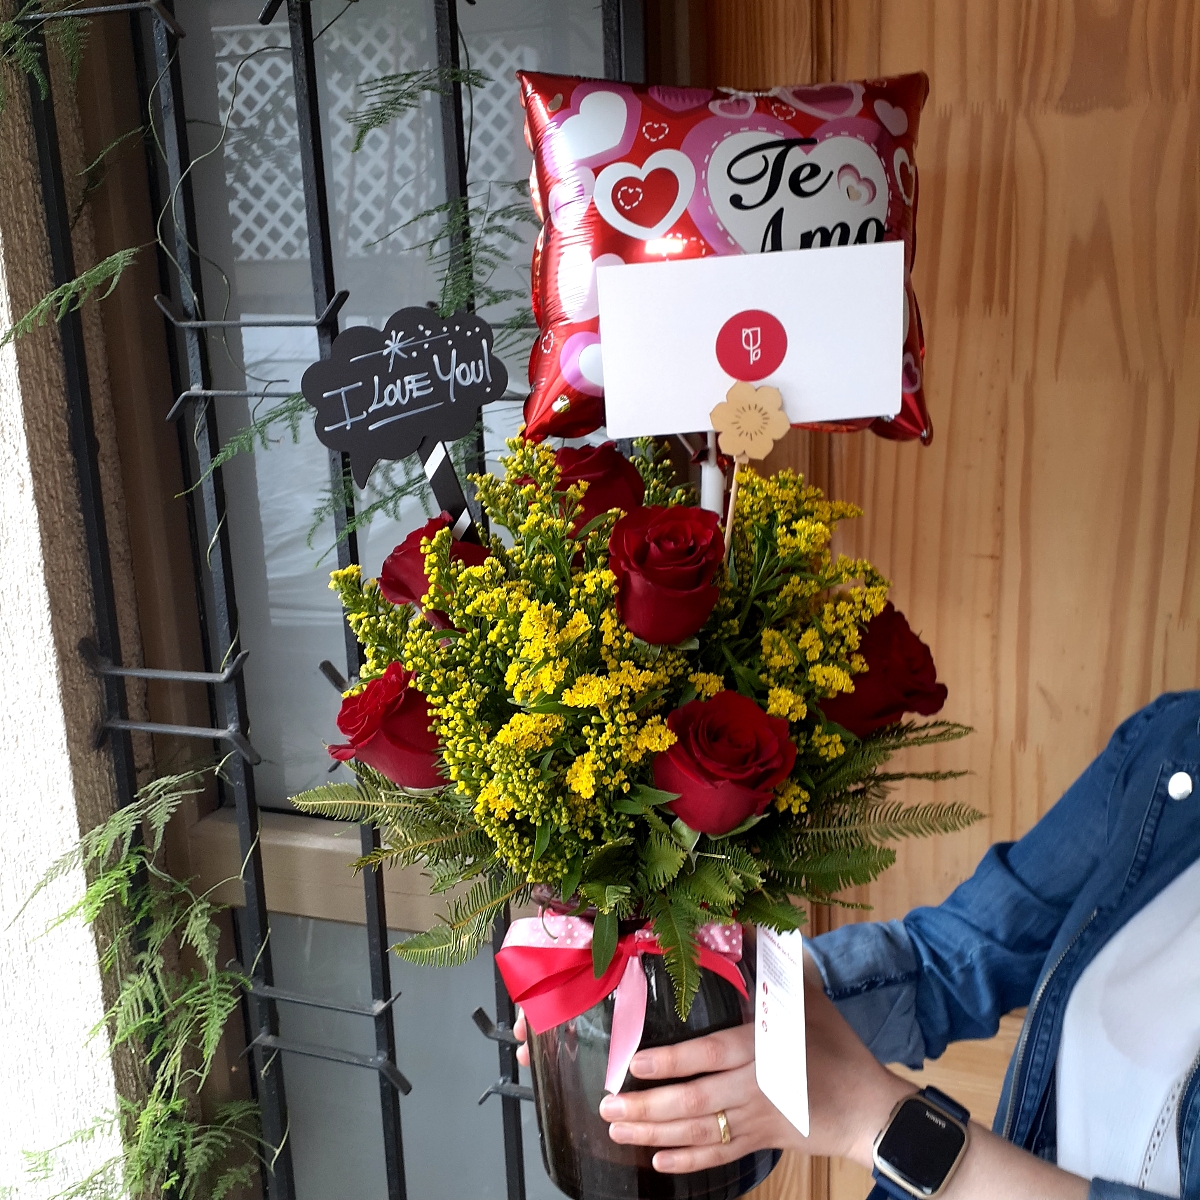 Caricias - Arreglo floral en florero con rosas ecuatorianas rojas, solidago y globo Te amo - Pedido 245052